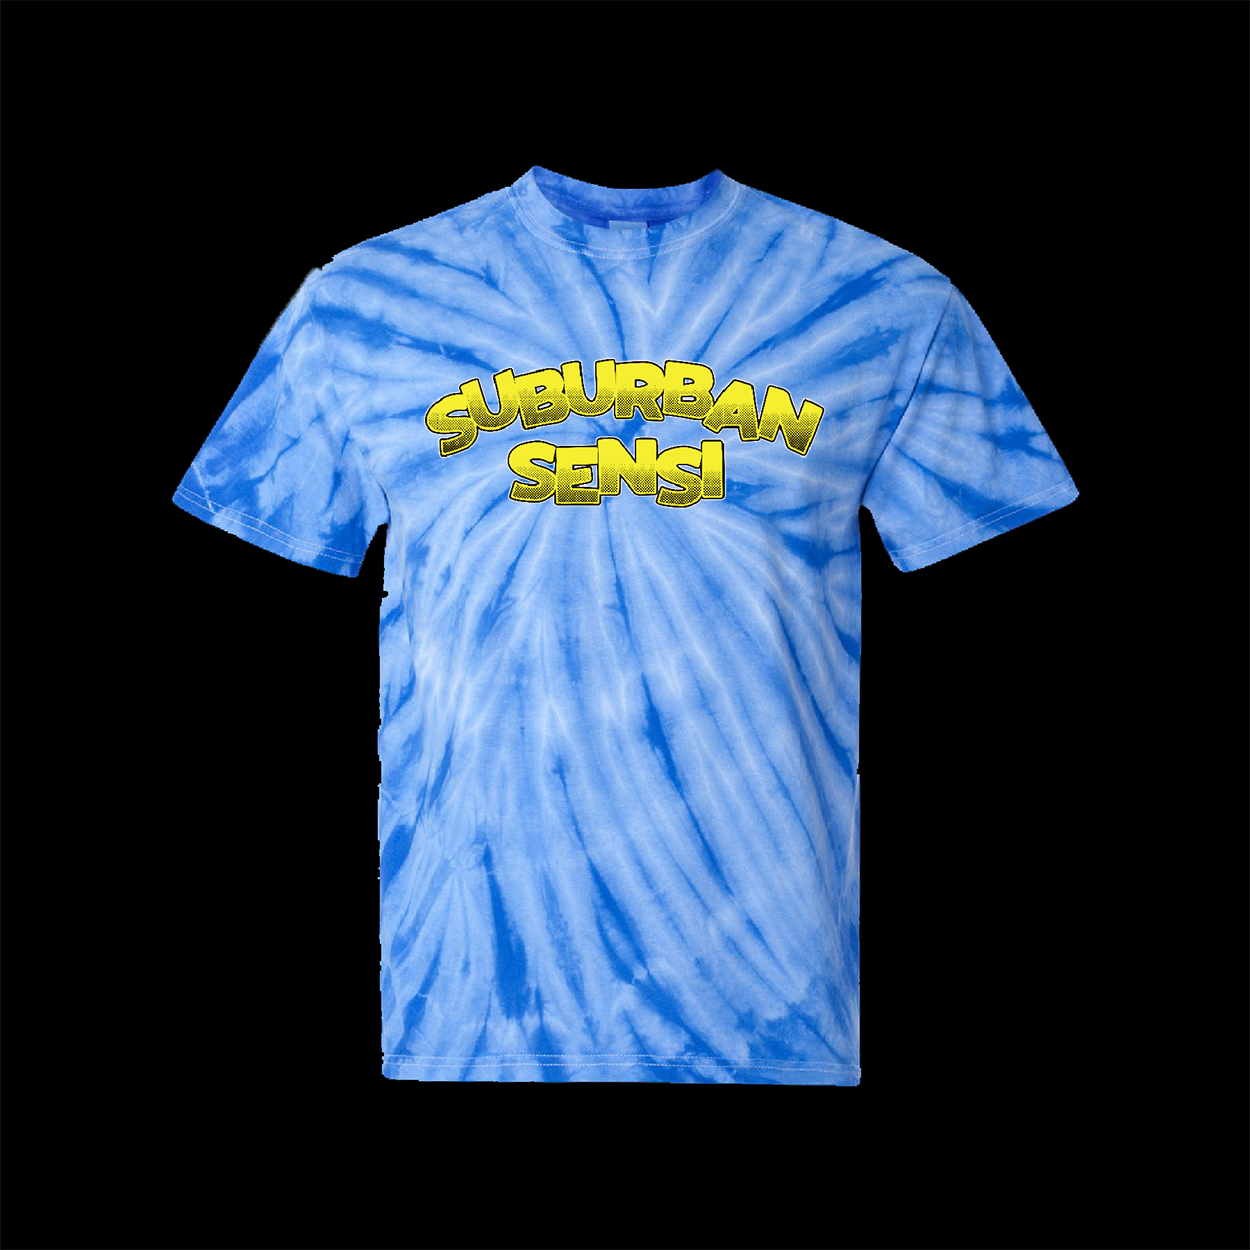 Suburban Sensi royal blue tye dye T-shirt